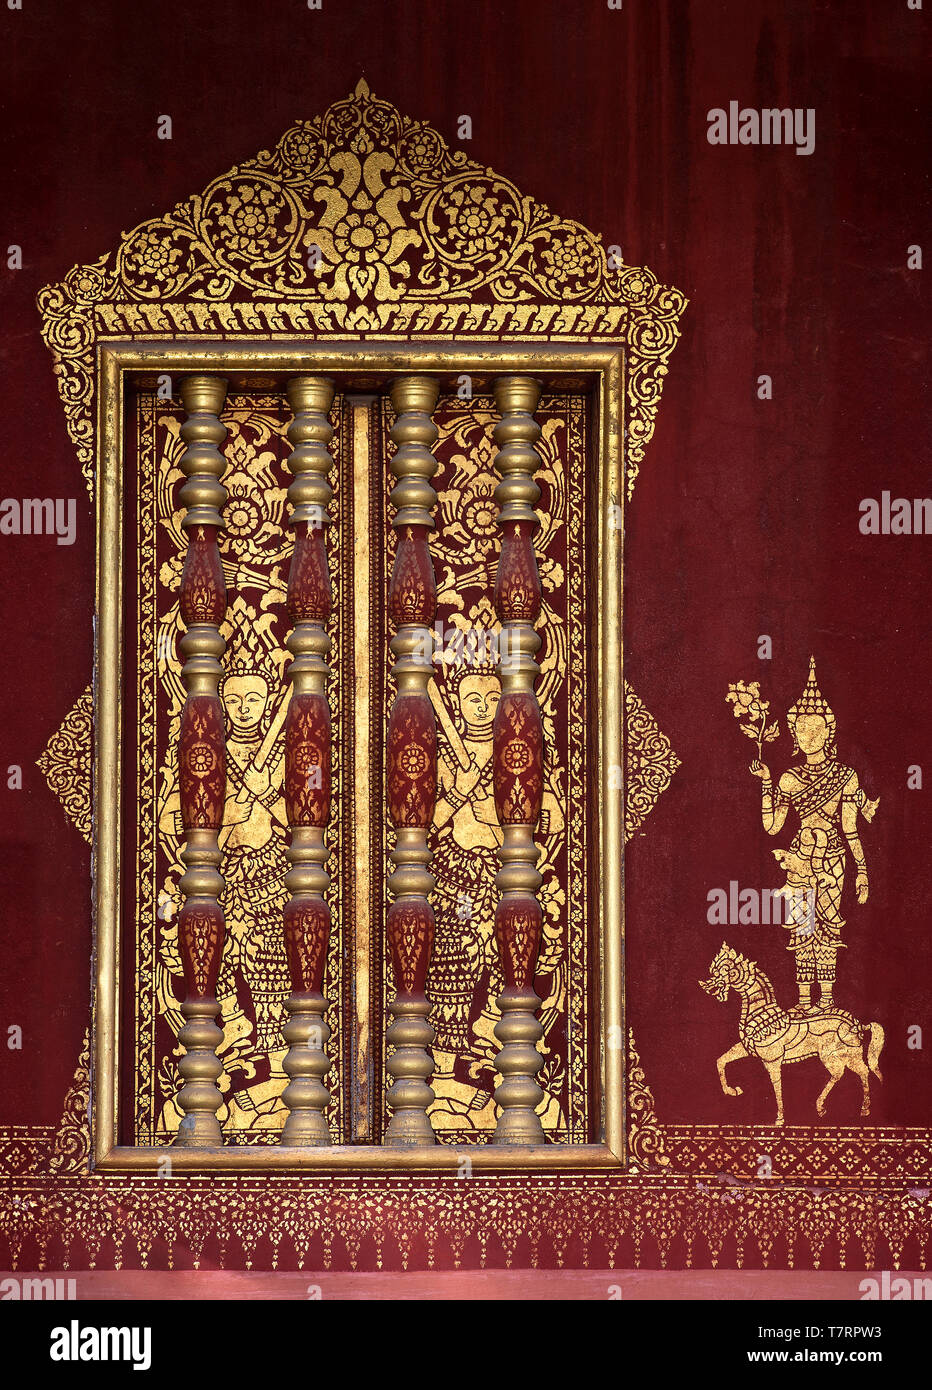 Windows accentués de balustrades en bois de style Khmer et peintures murales dorées d'une déité pochoirs, temple Wat Sensoukharam, Luang Prabang, Laos Banque D'Images